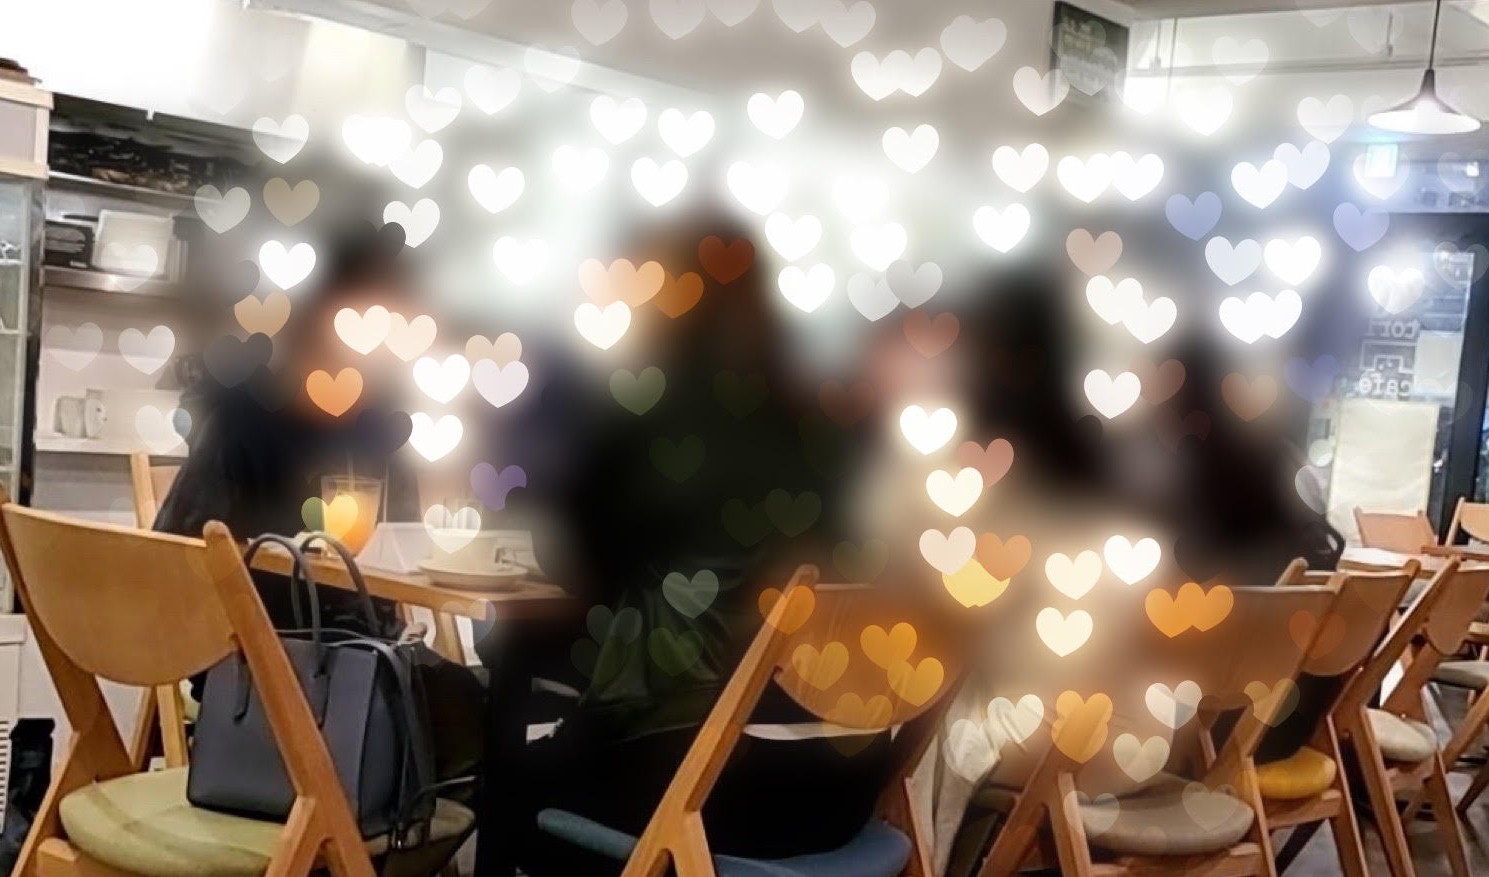 京都市の京都駅周辺で開催する婚活パーティー・恋活イベントイメージ